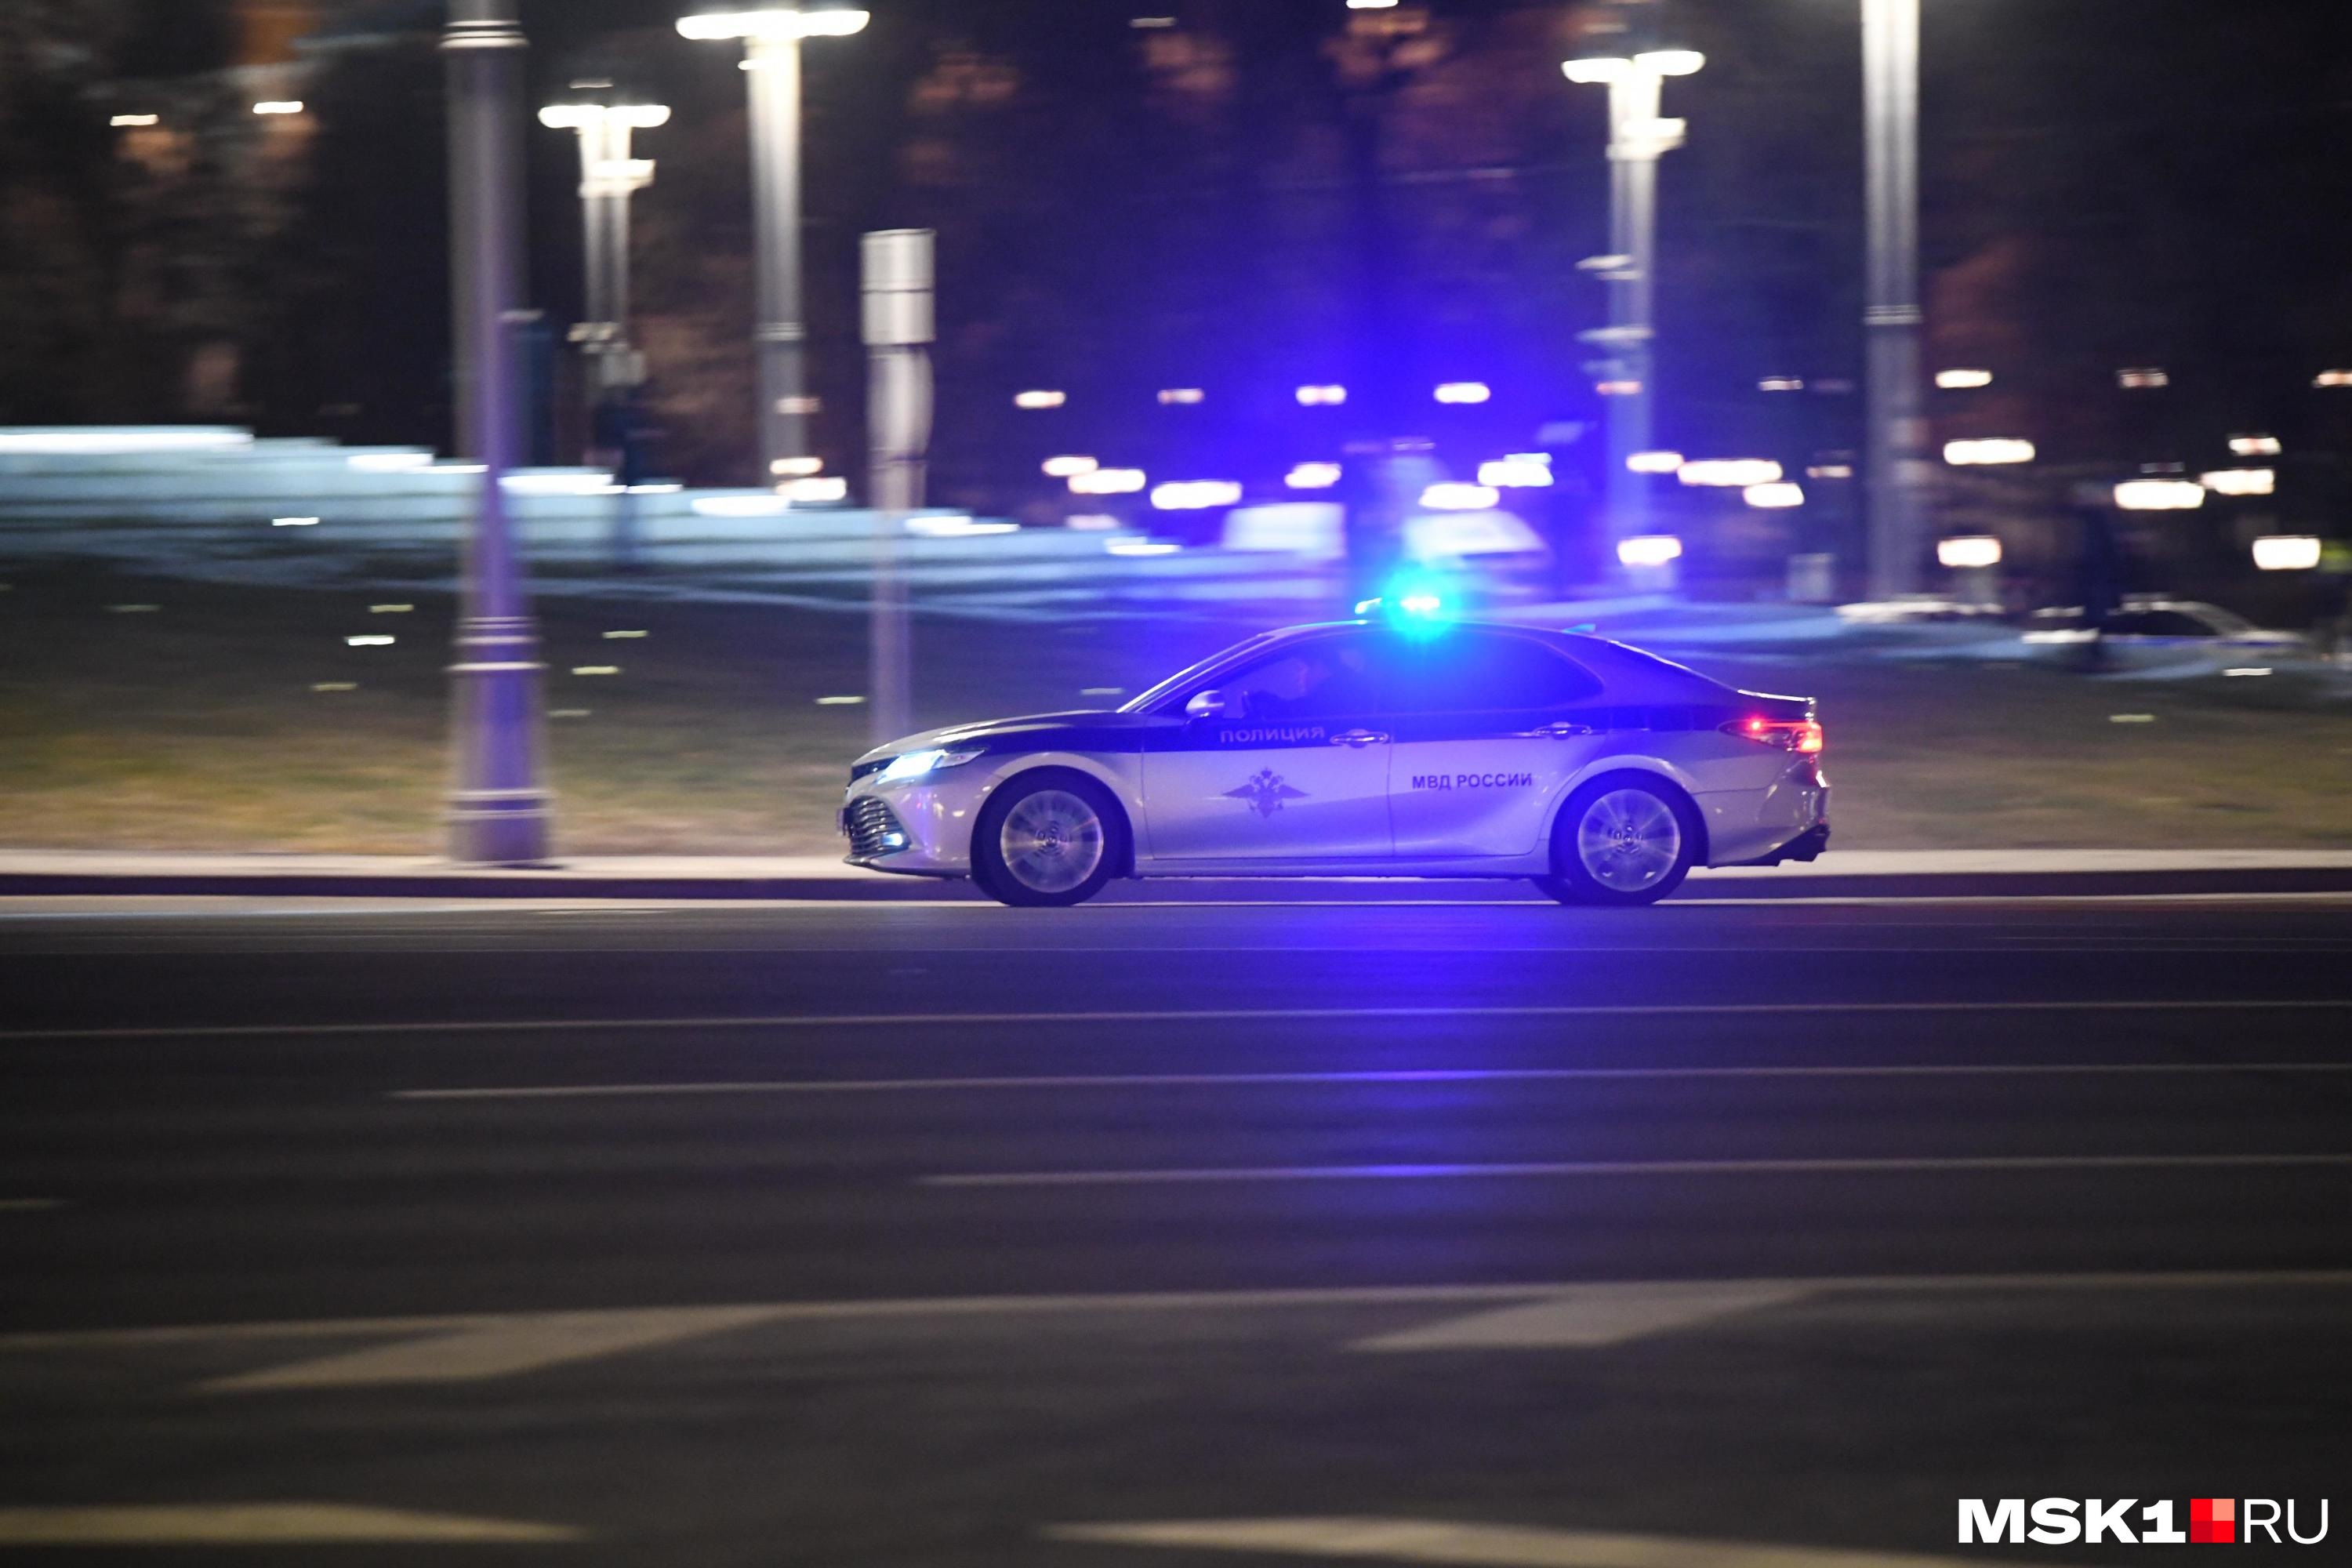 Водителя с признаками опьянения задержали за опасное вождение в Чите